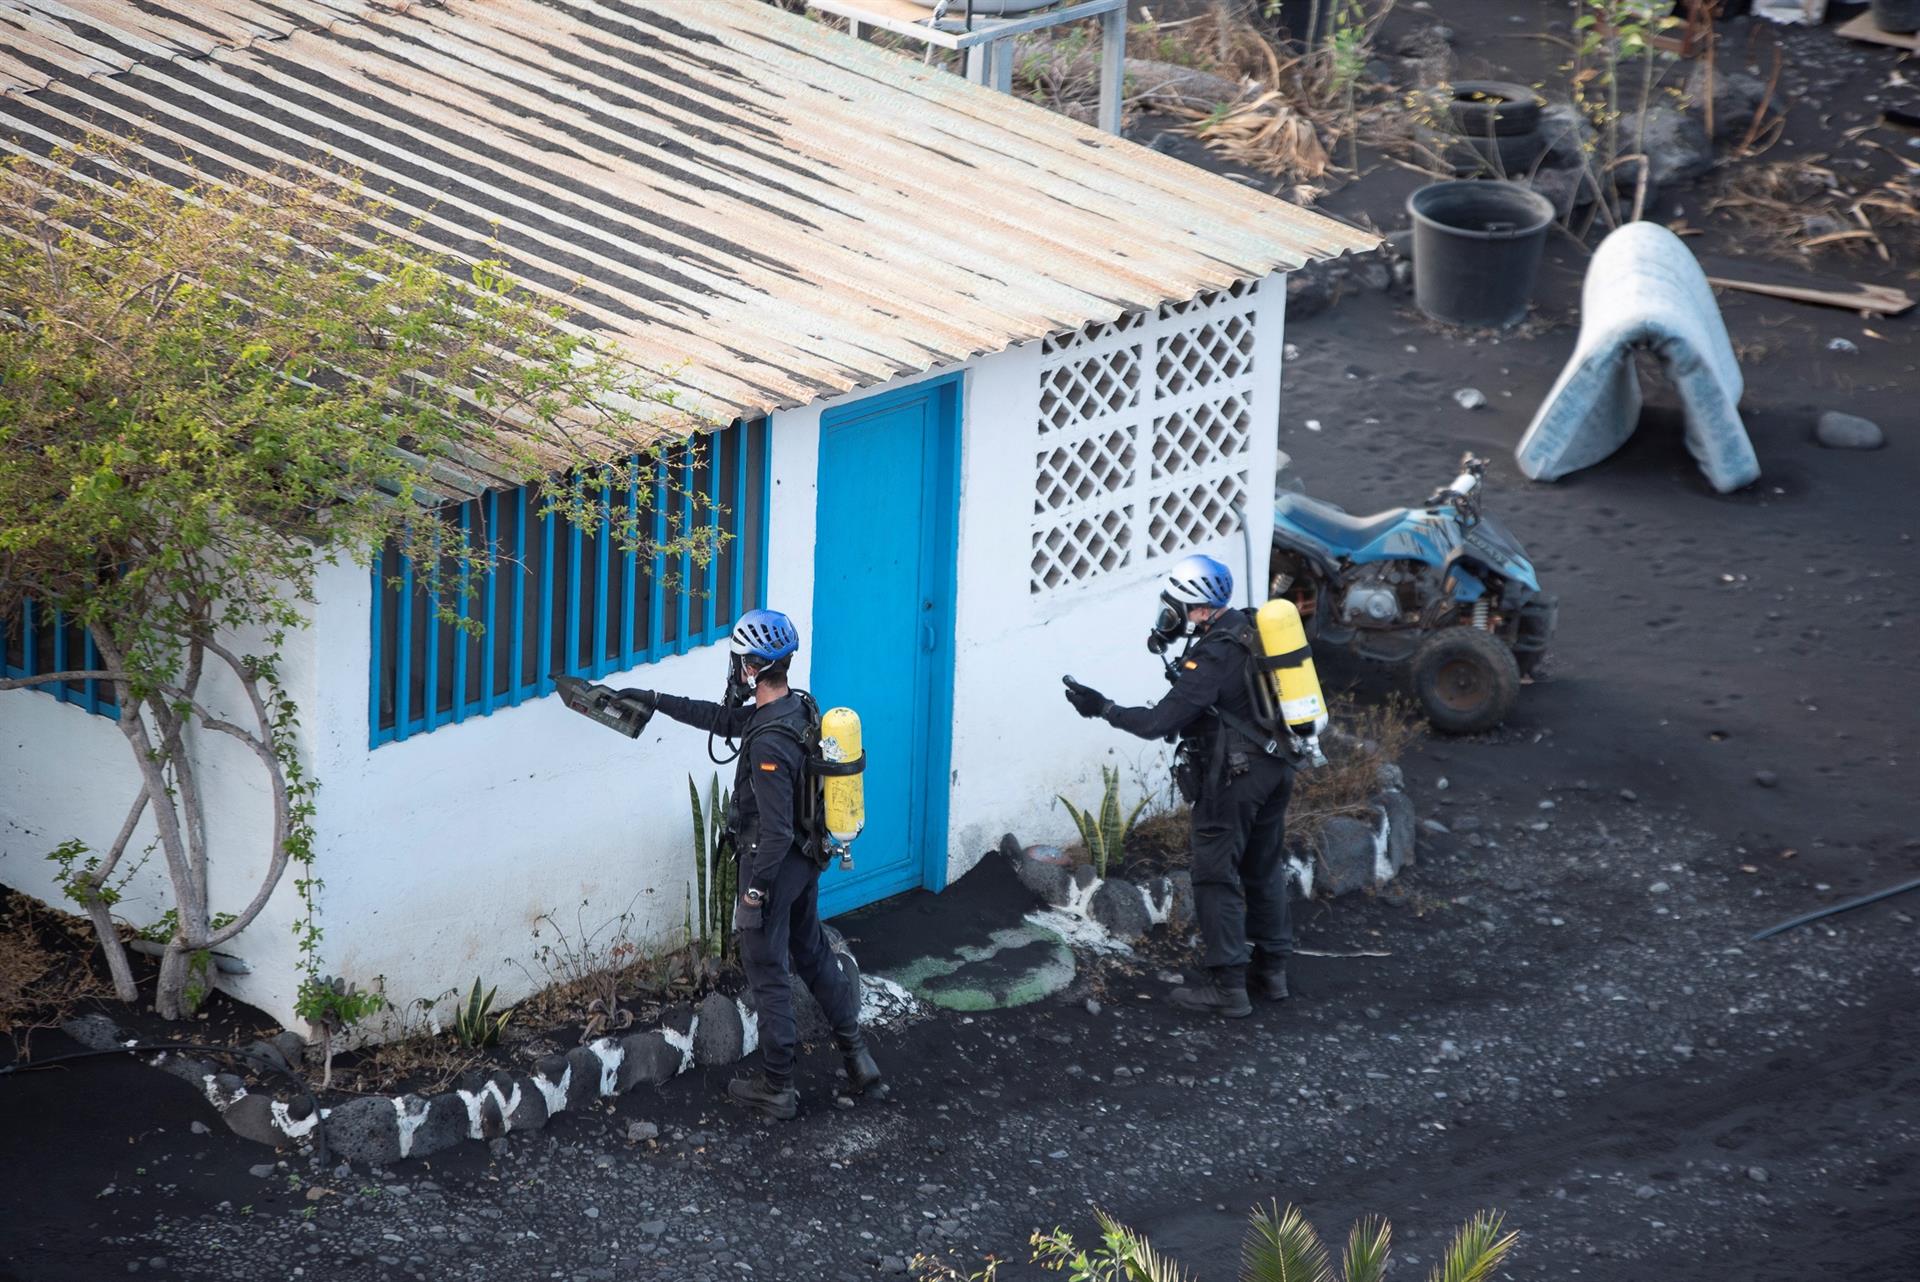 Foto de archivo, tomada el 5 de enero, de efectivos de la Guardia Civil realizando mediciones en el barrio costero de La Bombilla, donde se concentran gases tóxicos emitidos por el volcán de Cumbre Vieja. EFE/Miguel Calero